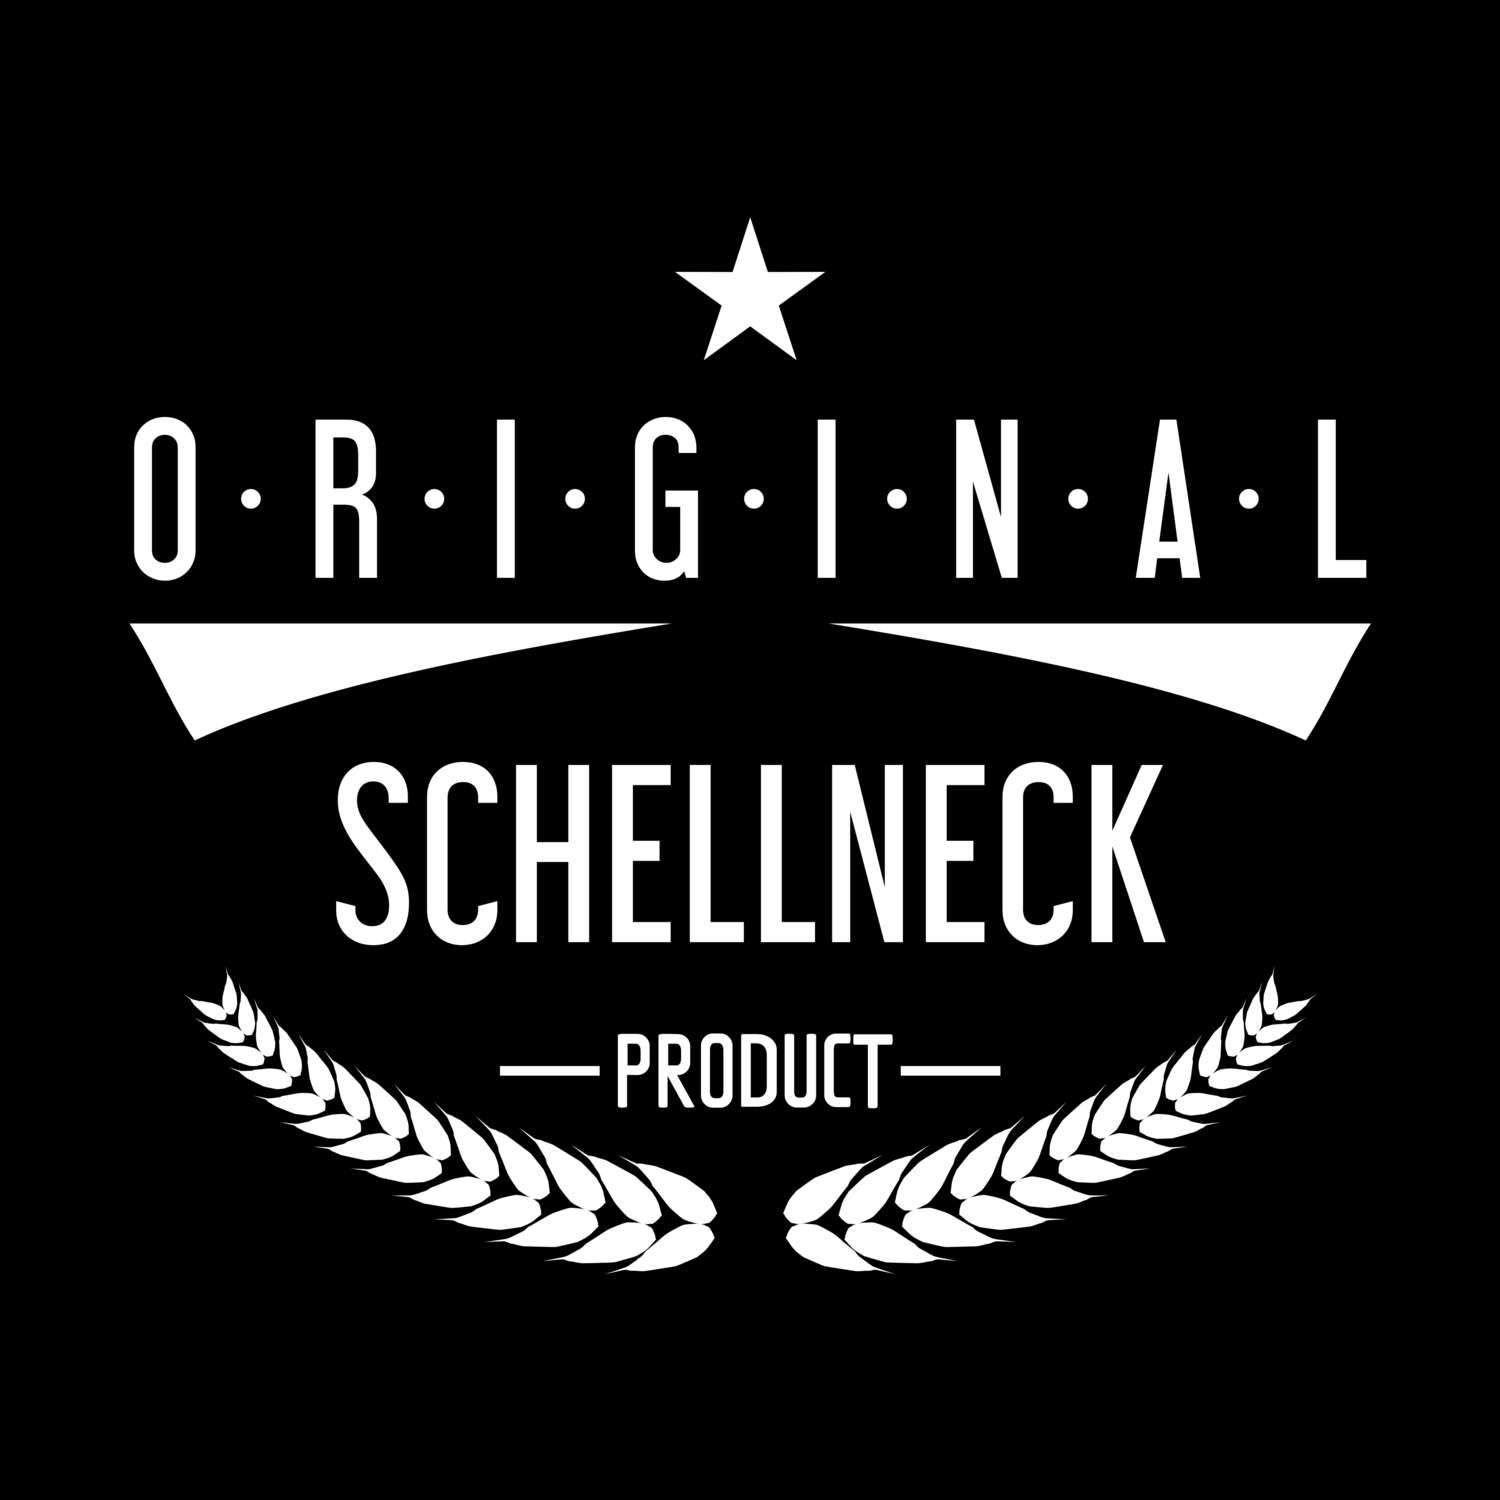 Schellneck T-Shirt »Original Product«